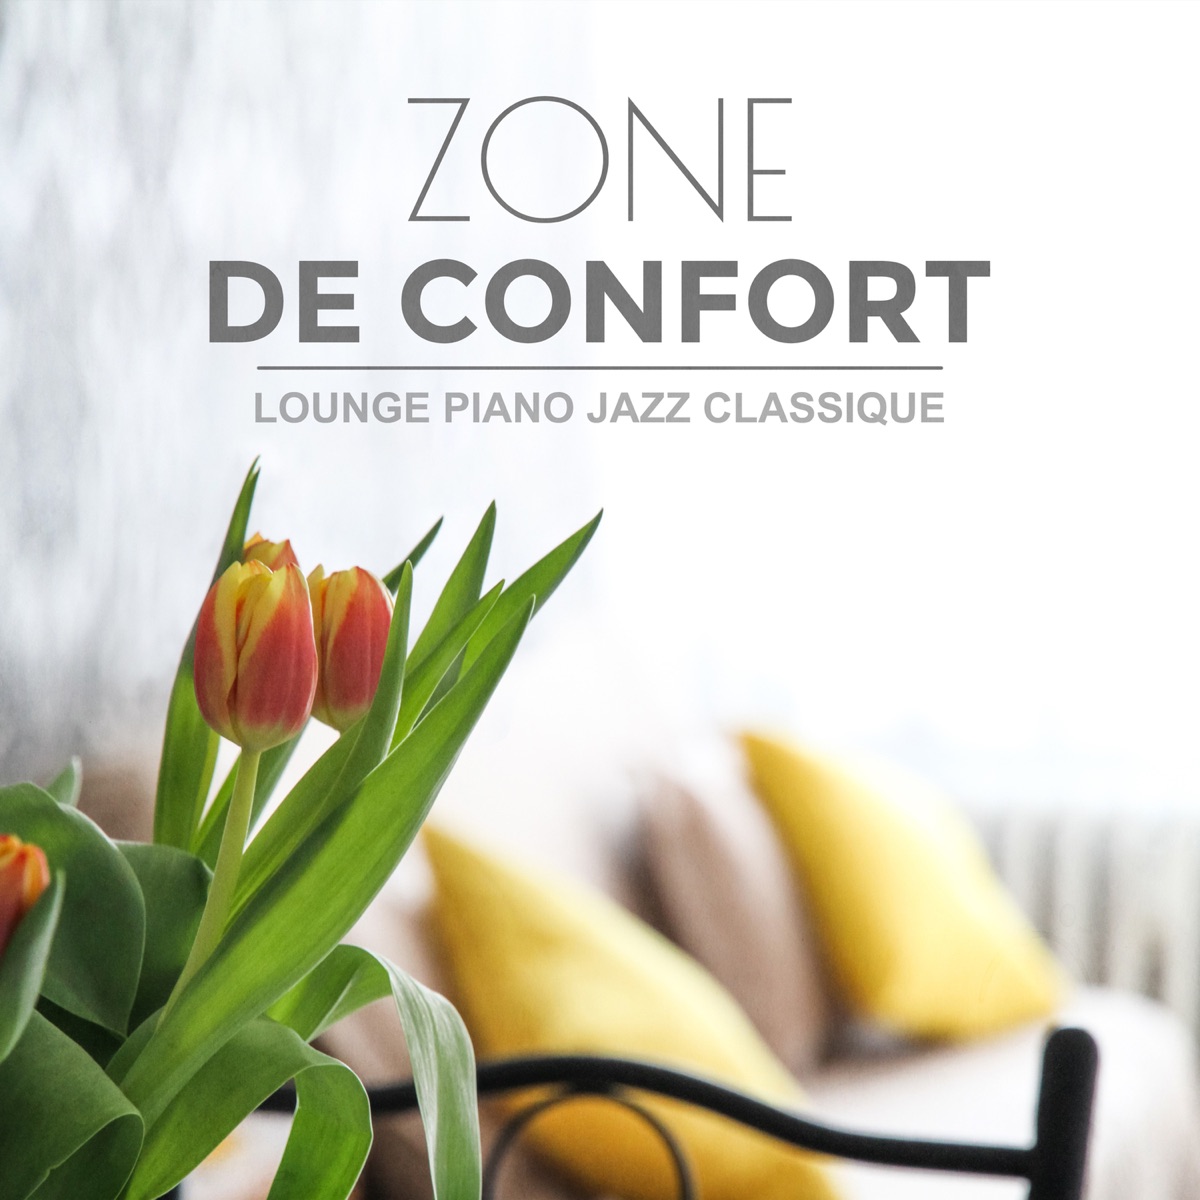 Zone de confort: Lounge piano jazz classique - Sentir à l'aise, garder le  contrôle, éprouvant relaxation, détente et bien-être - Album by Lisse Jazz  D'ambiance - Apple Music